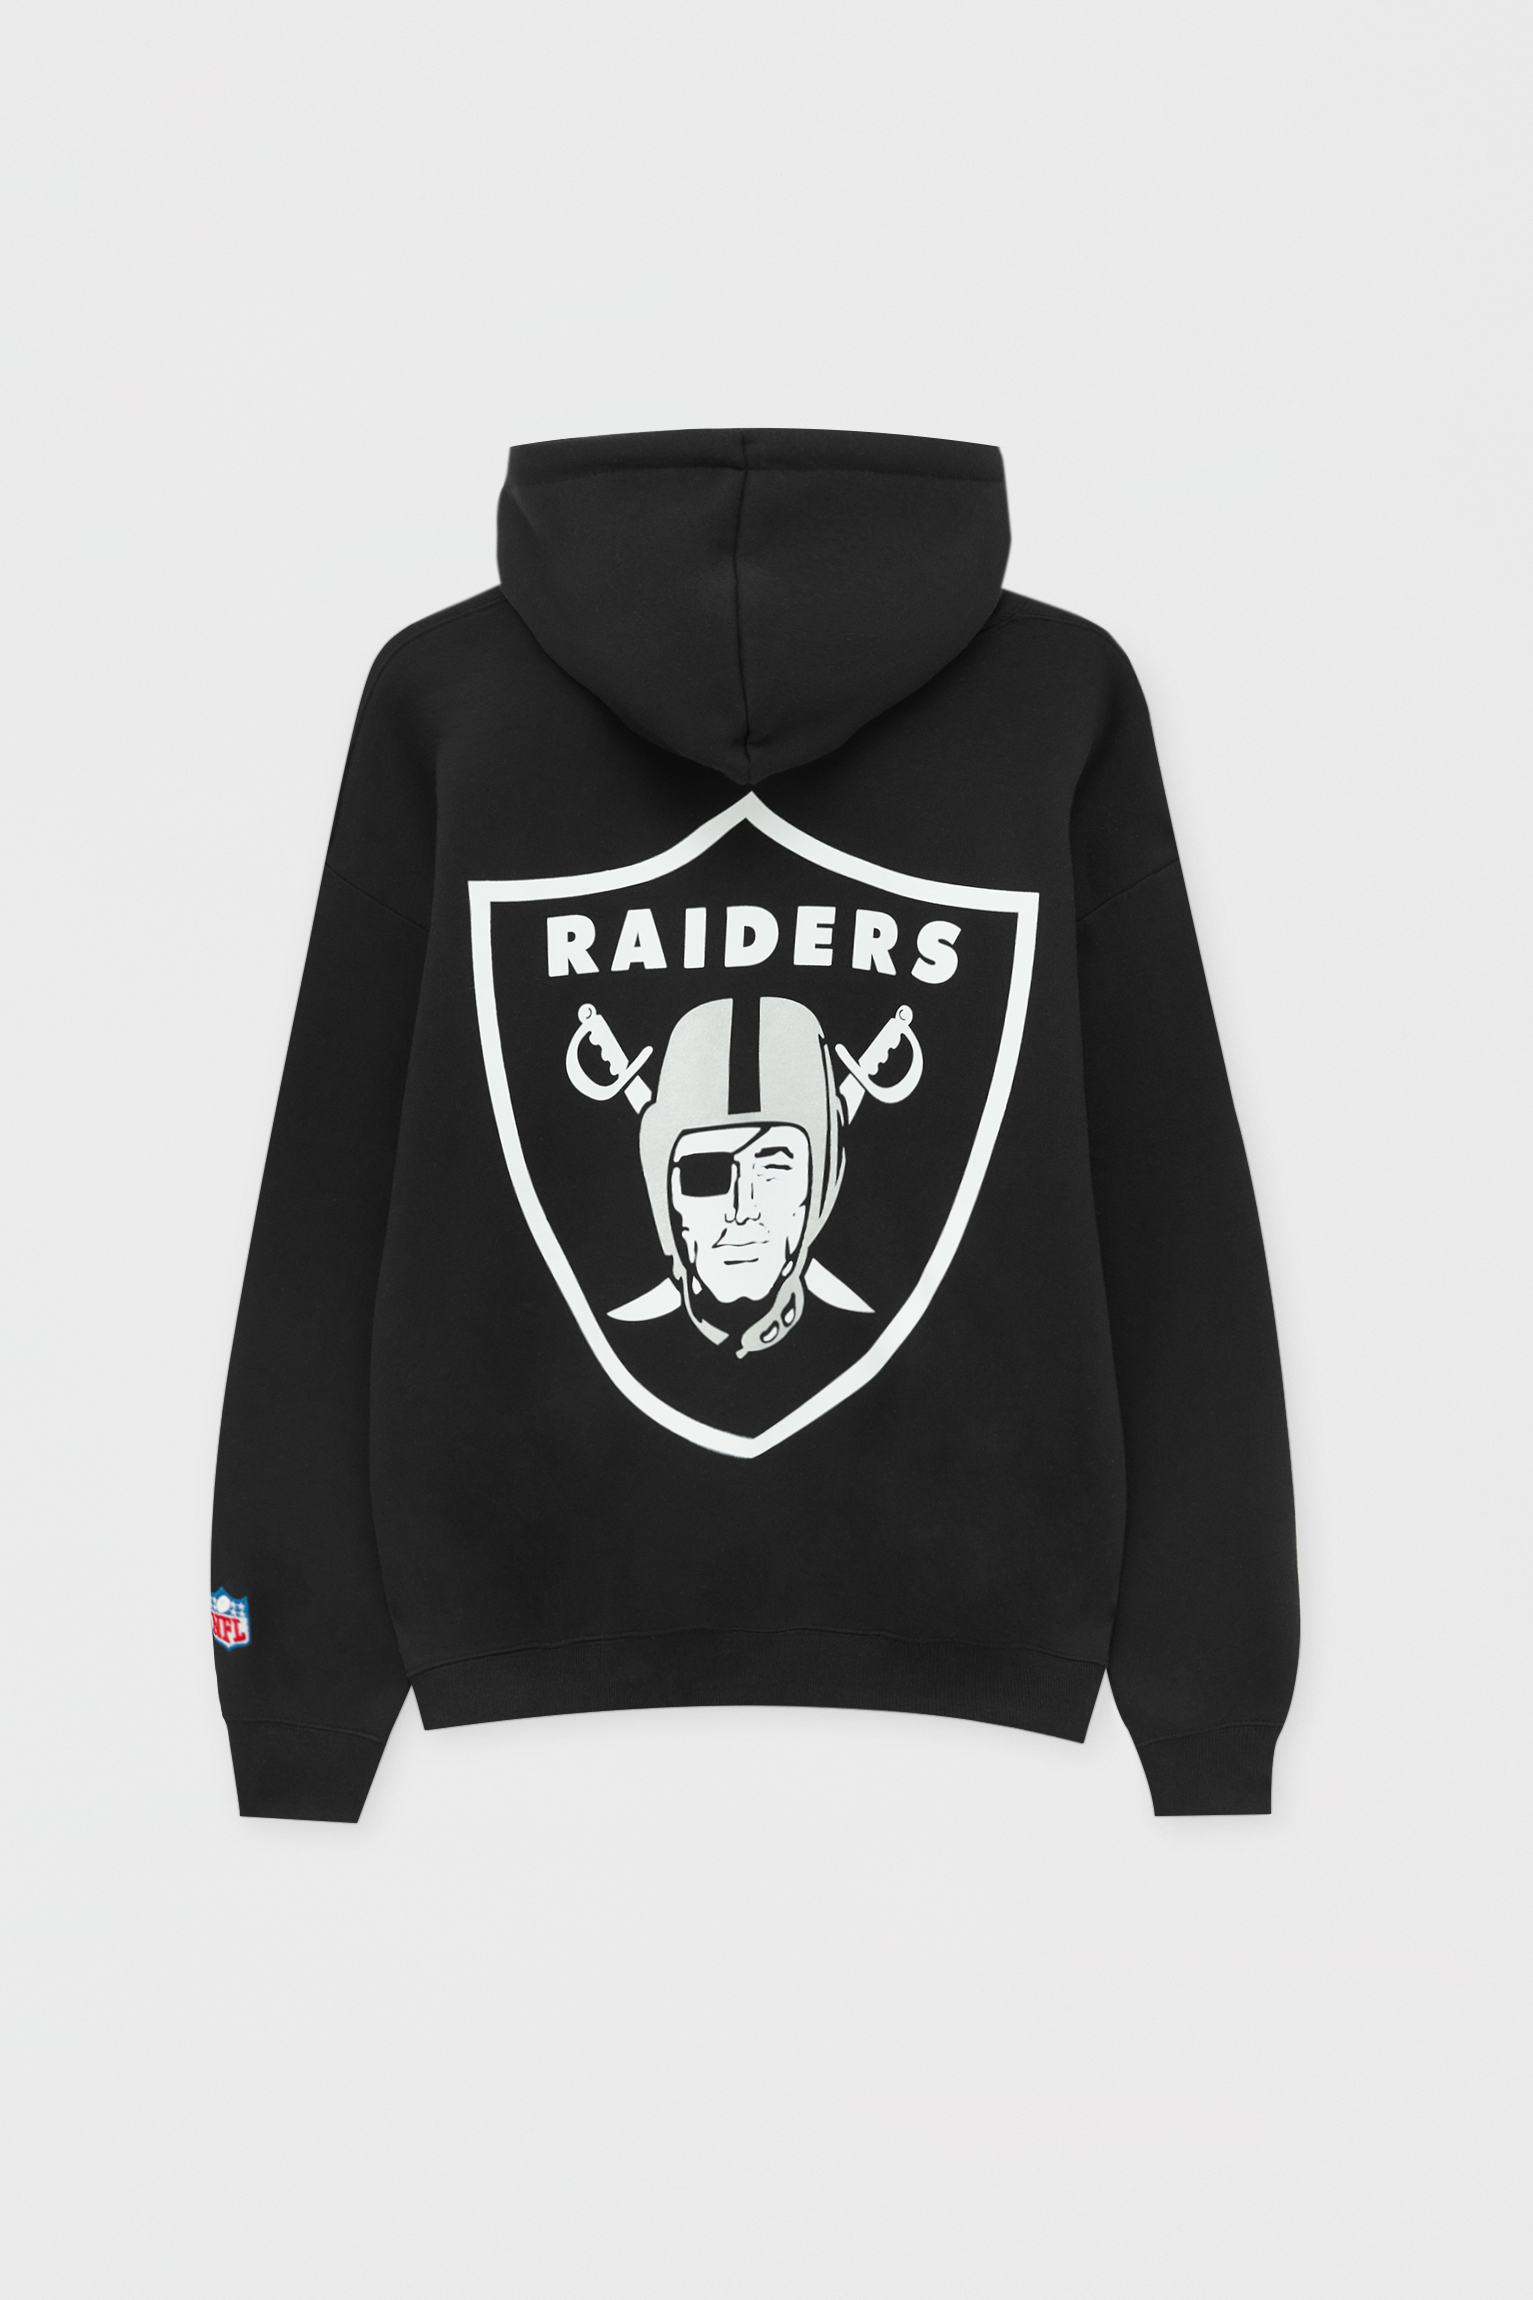 raiders sweatshirt cheap